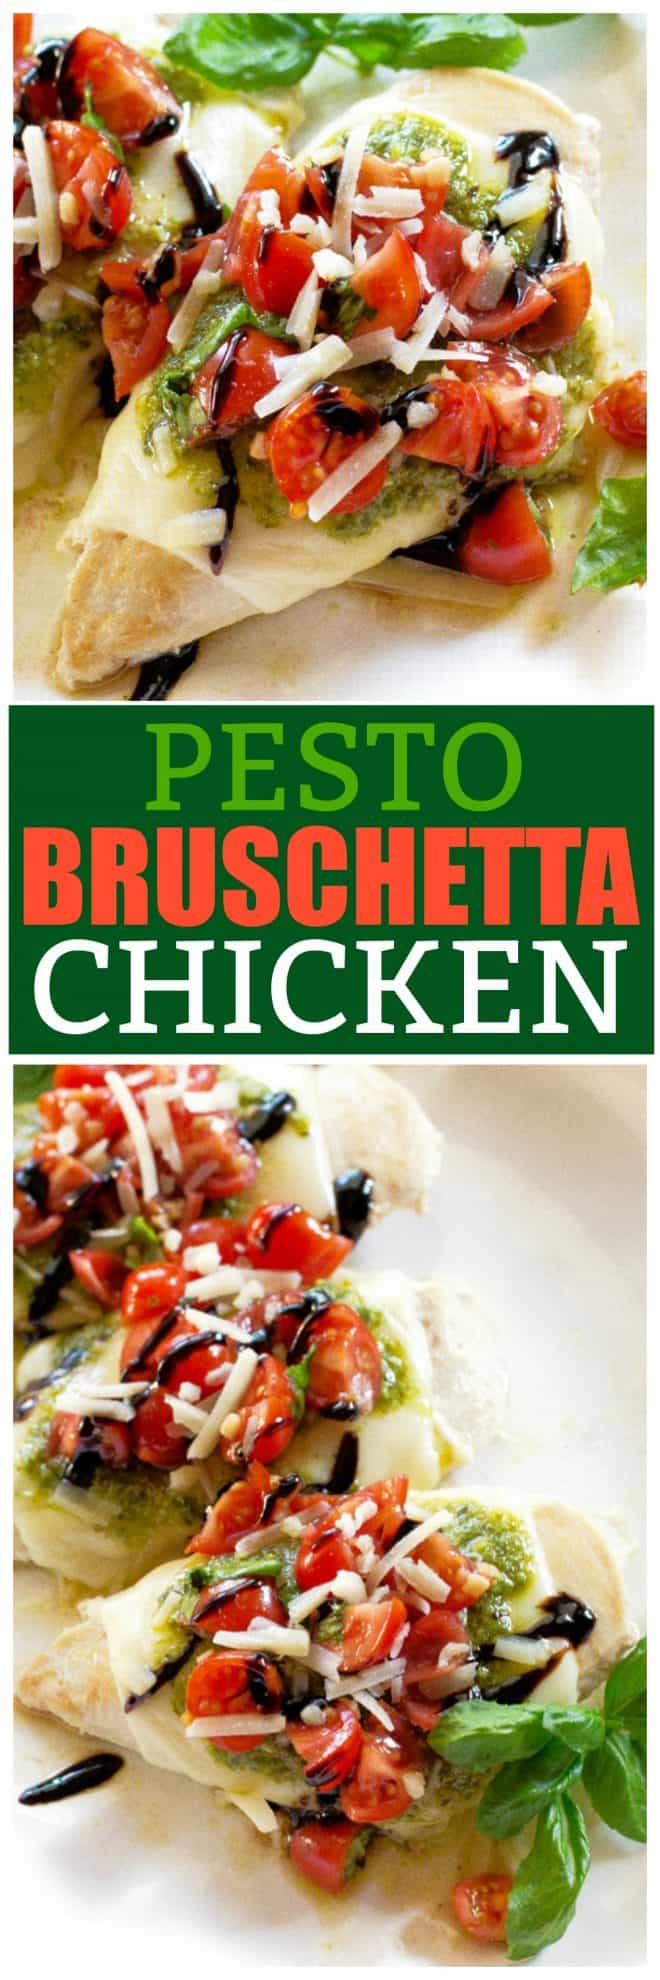 Pesto Bruschetta Chicken